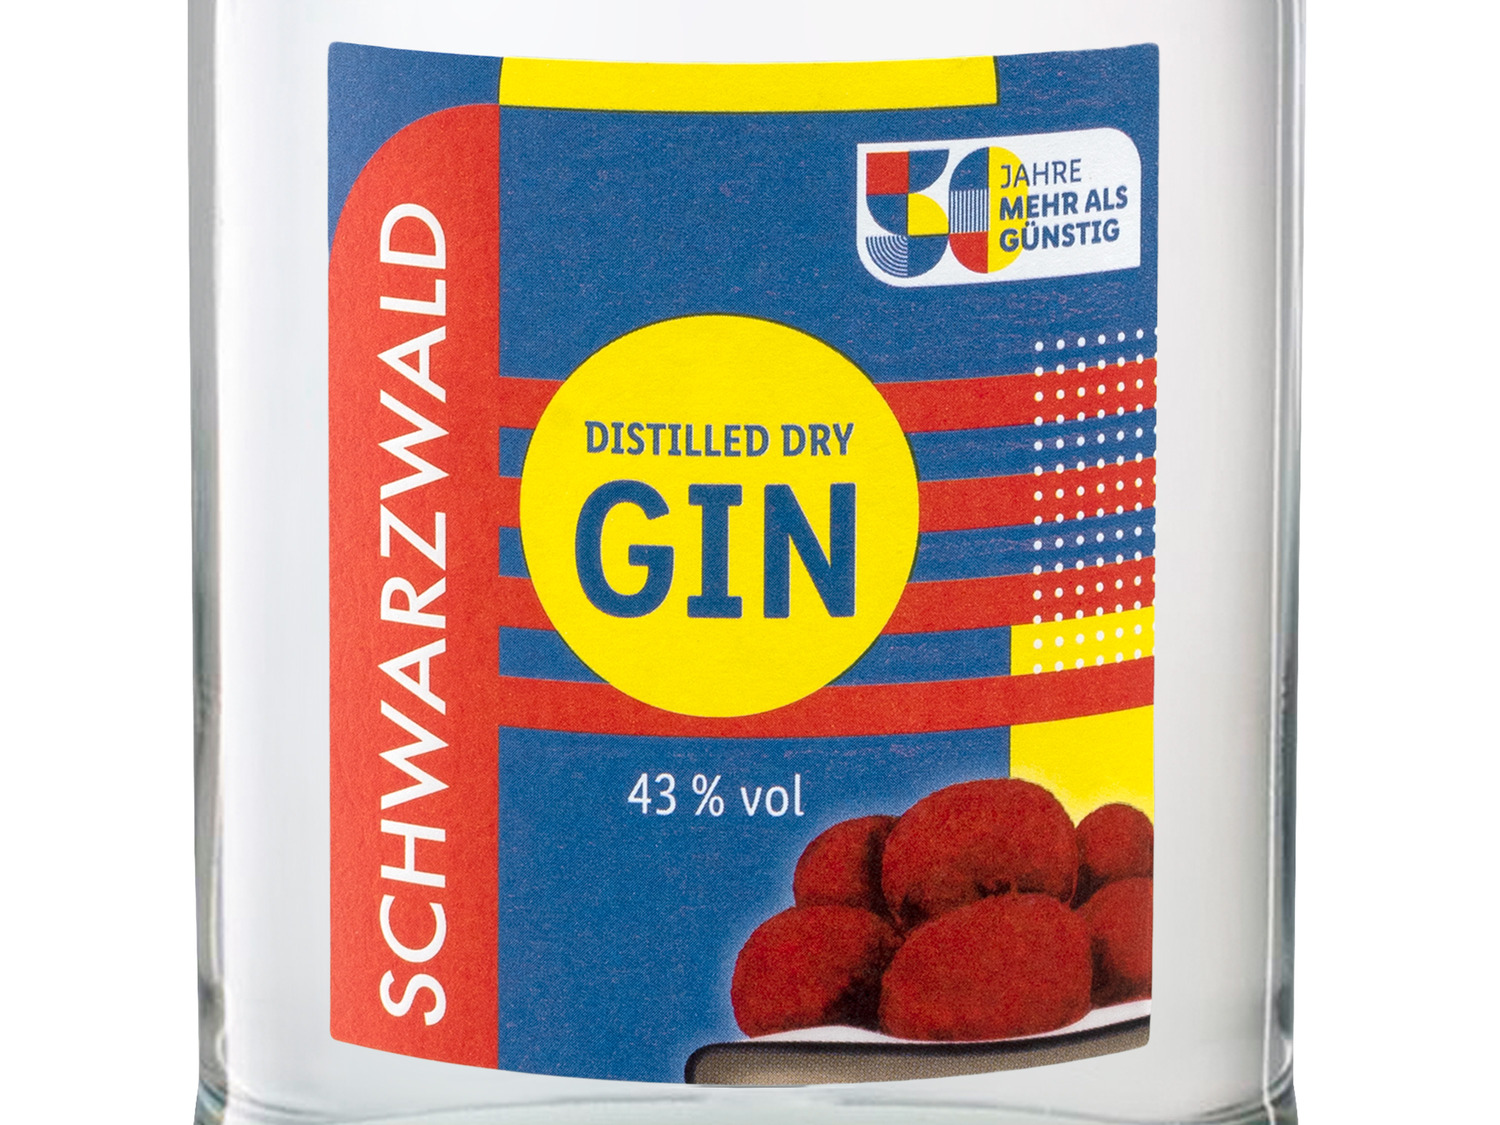 Dry Gin Distilled Schwarzwald Jahre \